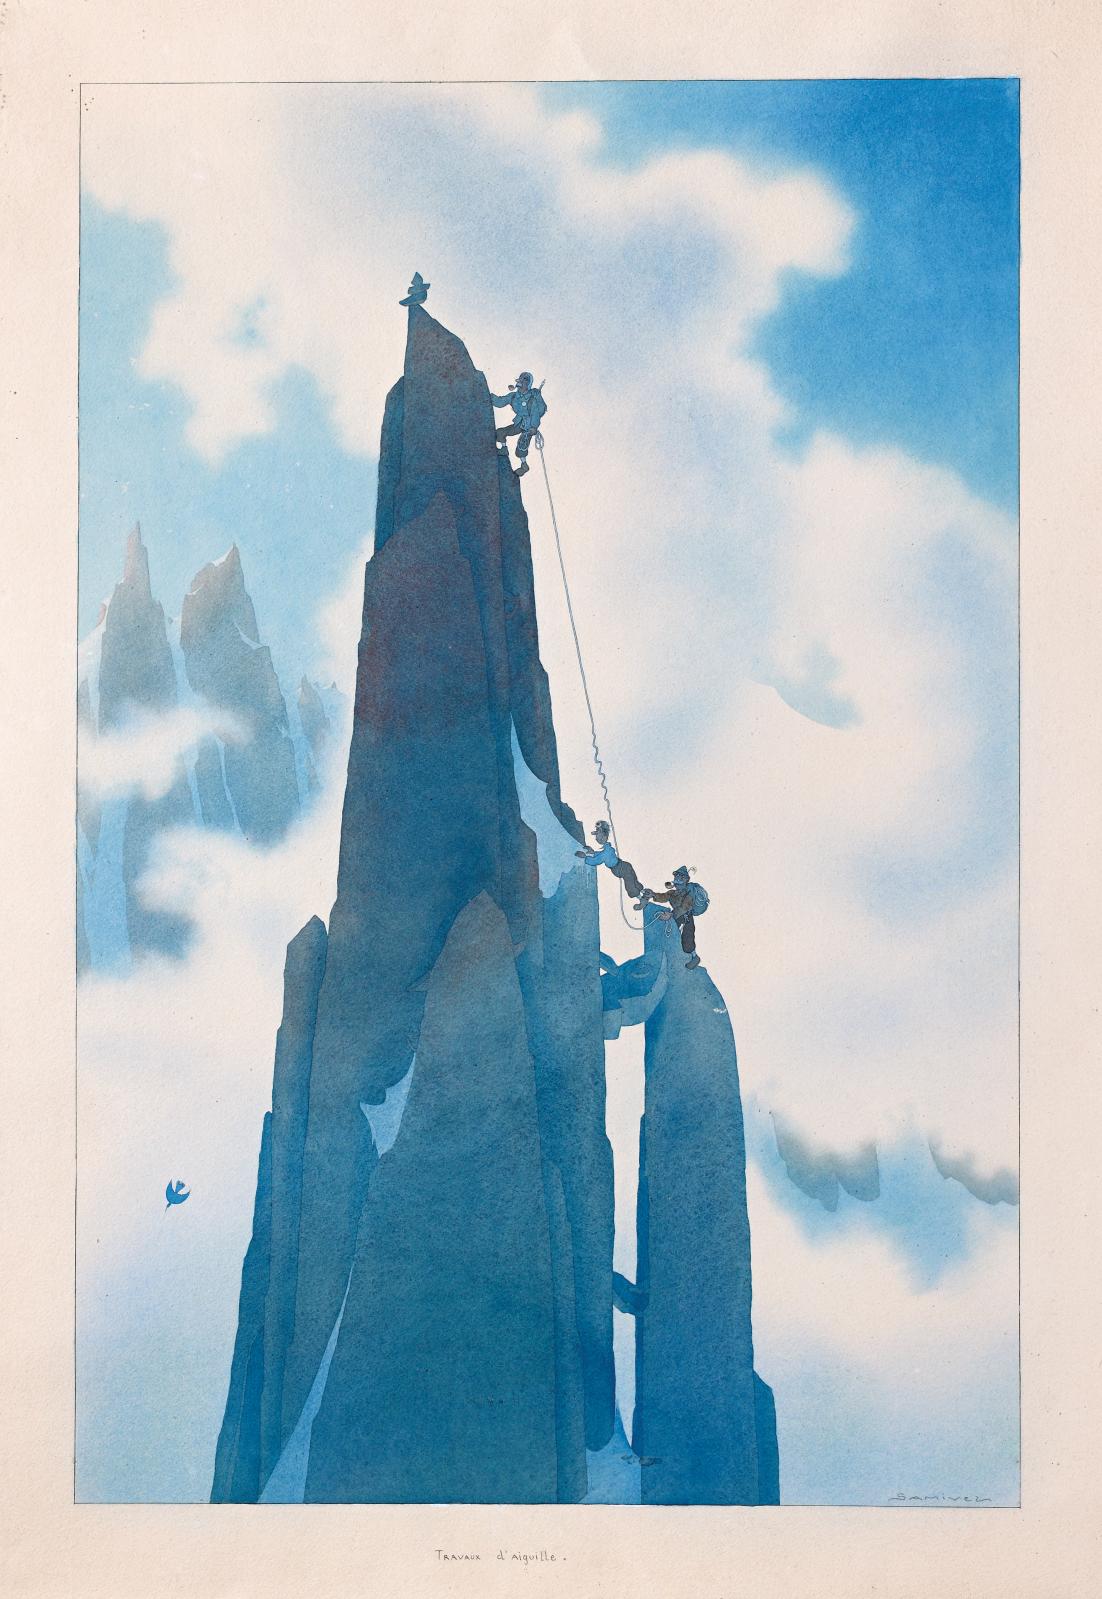 Paul Gayet-Tancrède, dit Samivel (1907-1992). Travaux d’aiguille, aquarelle, 51 x 33 cm. Paris, Drouot, 7 décembre 2018. Blanchet & Associés OVV. Adju